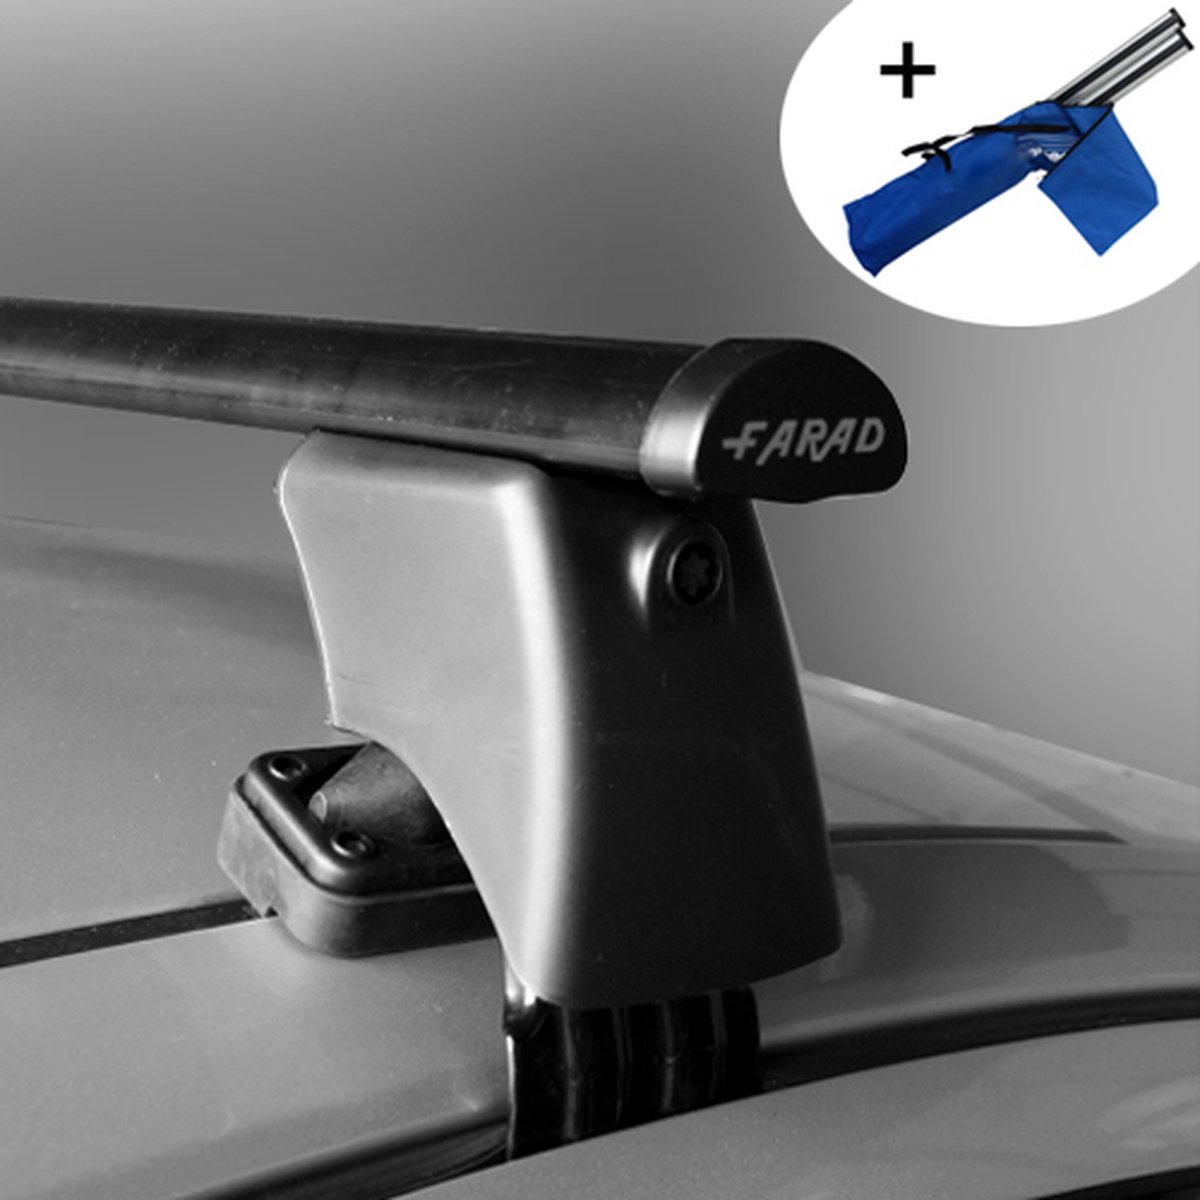 Dakdragers geschikt voor Chevrolet Spark 5 deurs hatchback 2010 t/m 2015 - Staal - inclusief dakdrager opbergtas